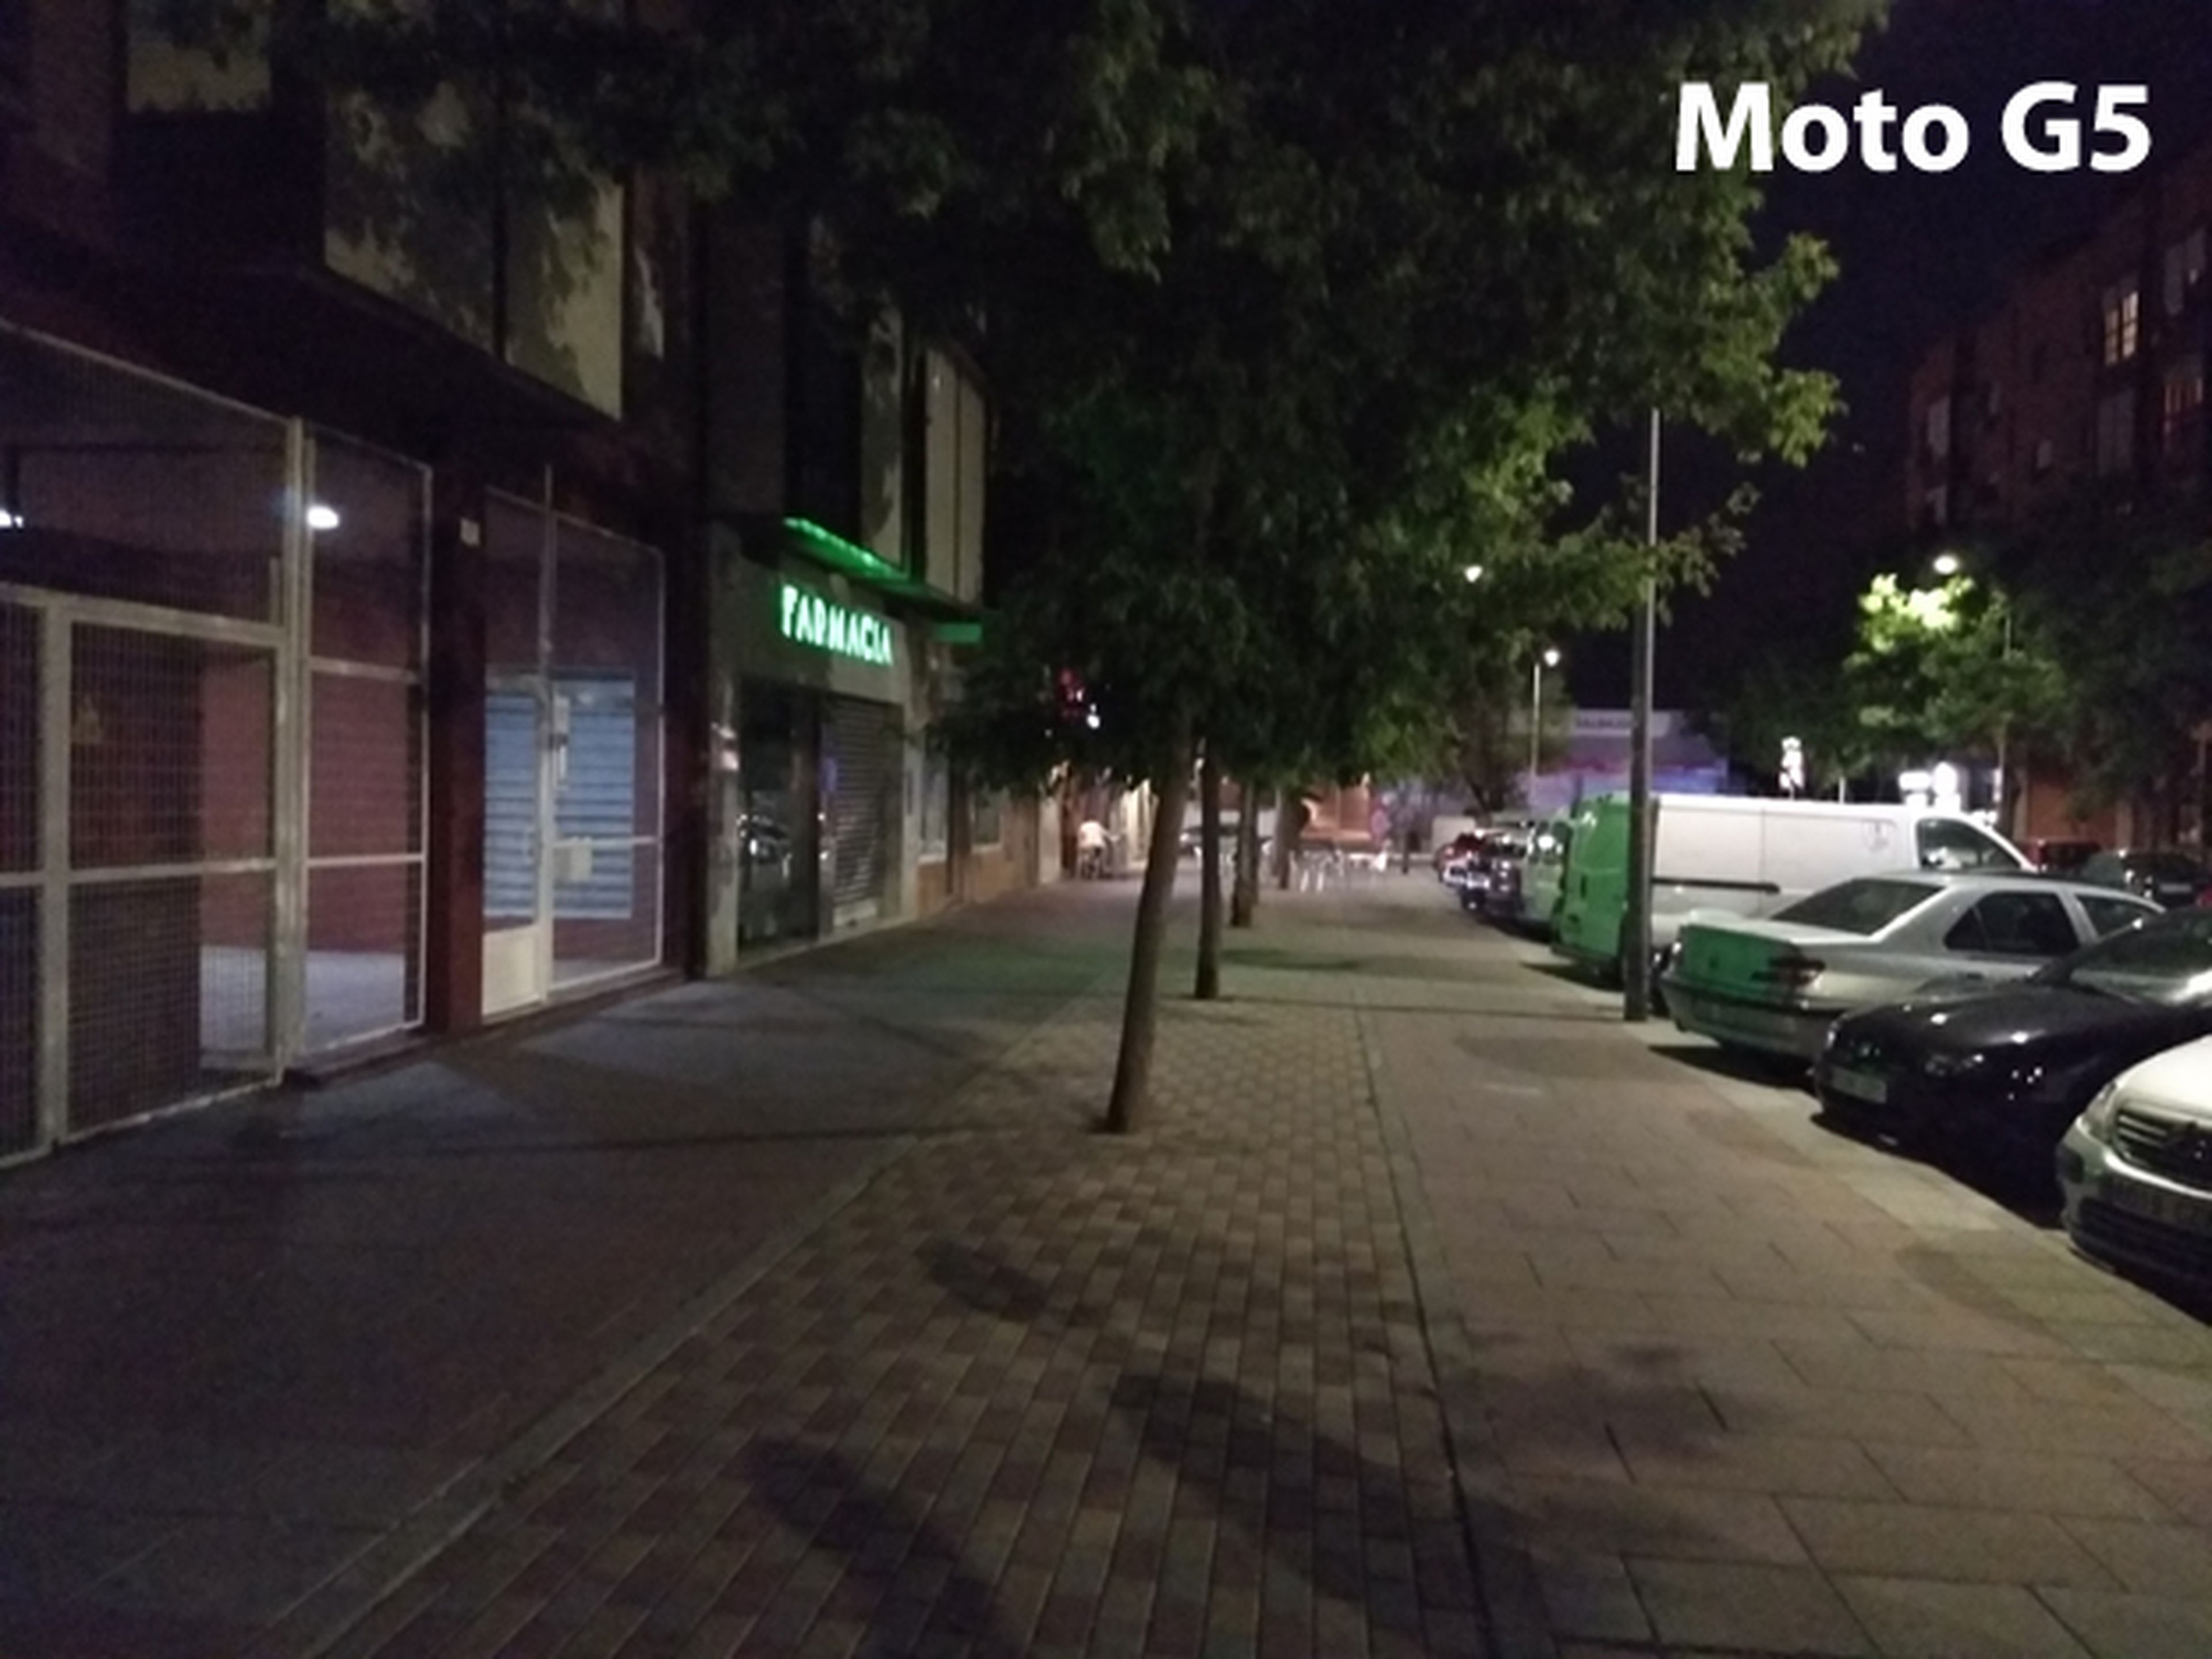 Foto de noche hecha con el Moto G5